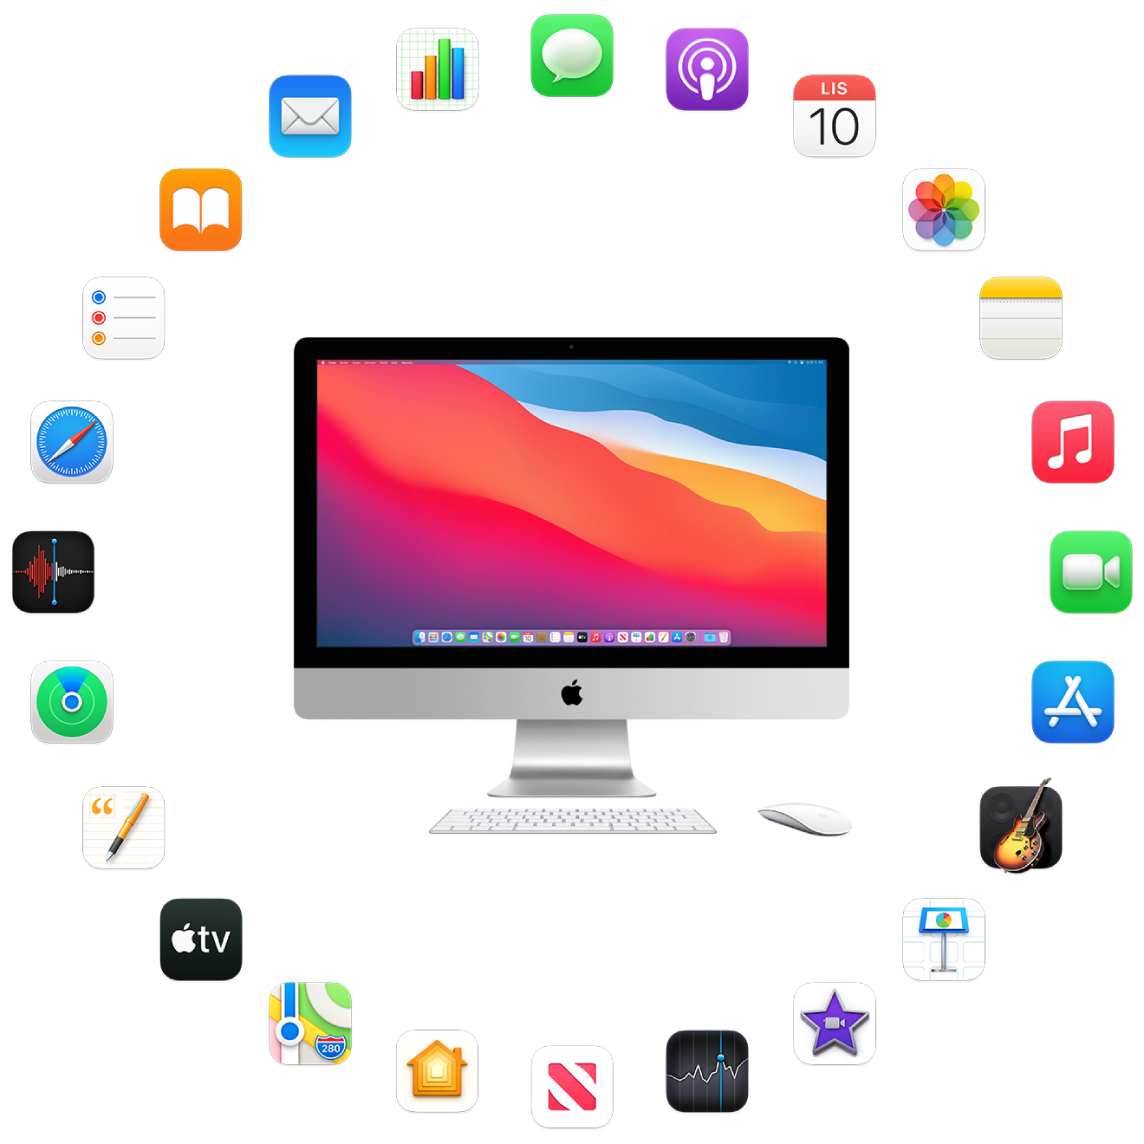 iMac obklopený ikonami předinstalovaných aplikací, které jsou popsány v následujících oddílech